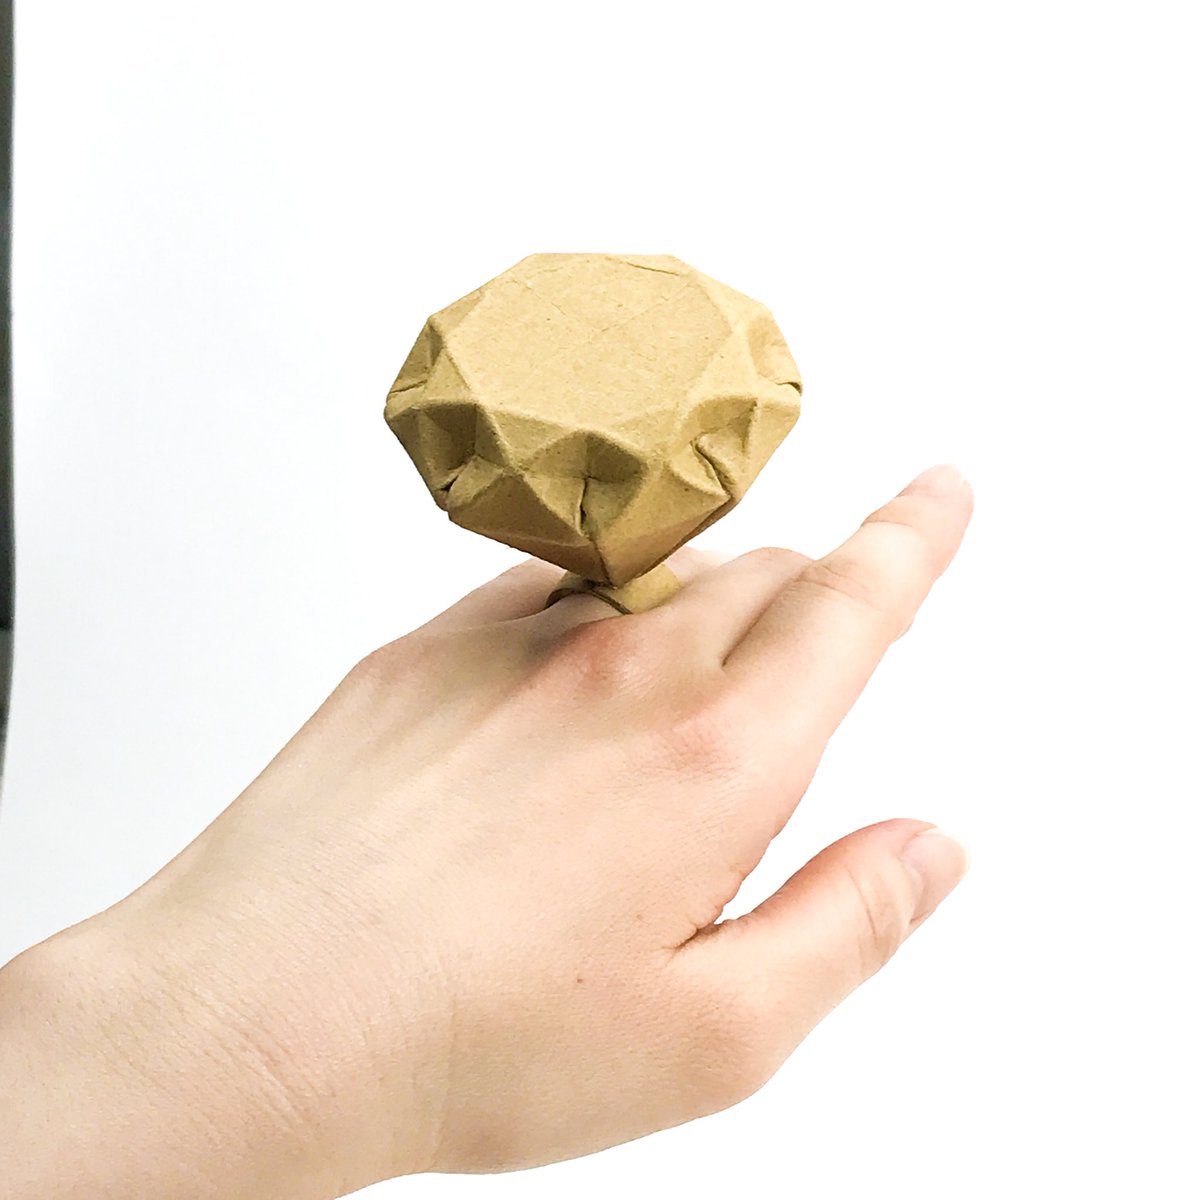 オダカマサキ オドンガー大佐 على تويتر ダンボモンドの指輪 可愛いリングを欲しがっているワイフに 母の日に巨大リングを贈りました Abrahamさん Origami Abraham の折り紙のダイヤモンドを ダンボールで折って造形 折り返す厚みが収まらず 四隅カットしま